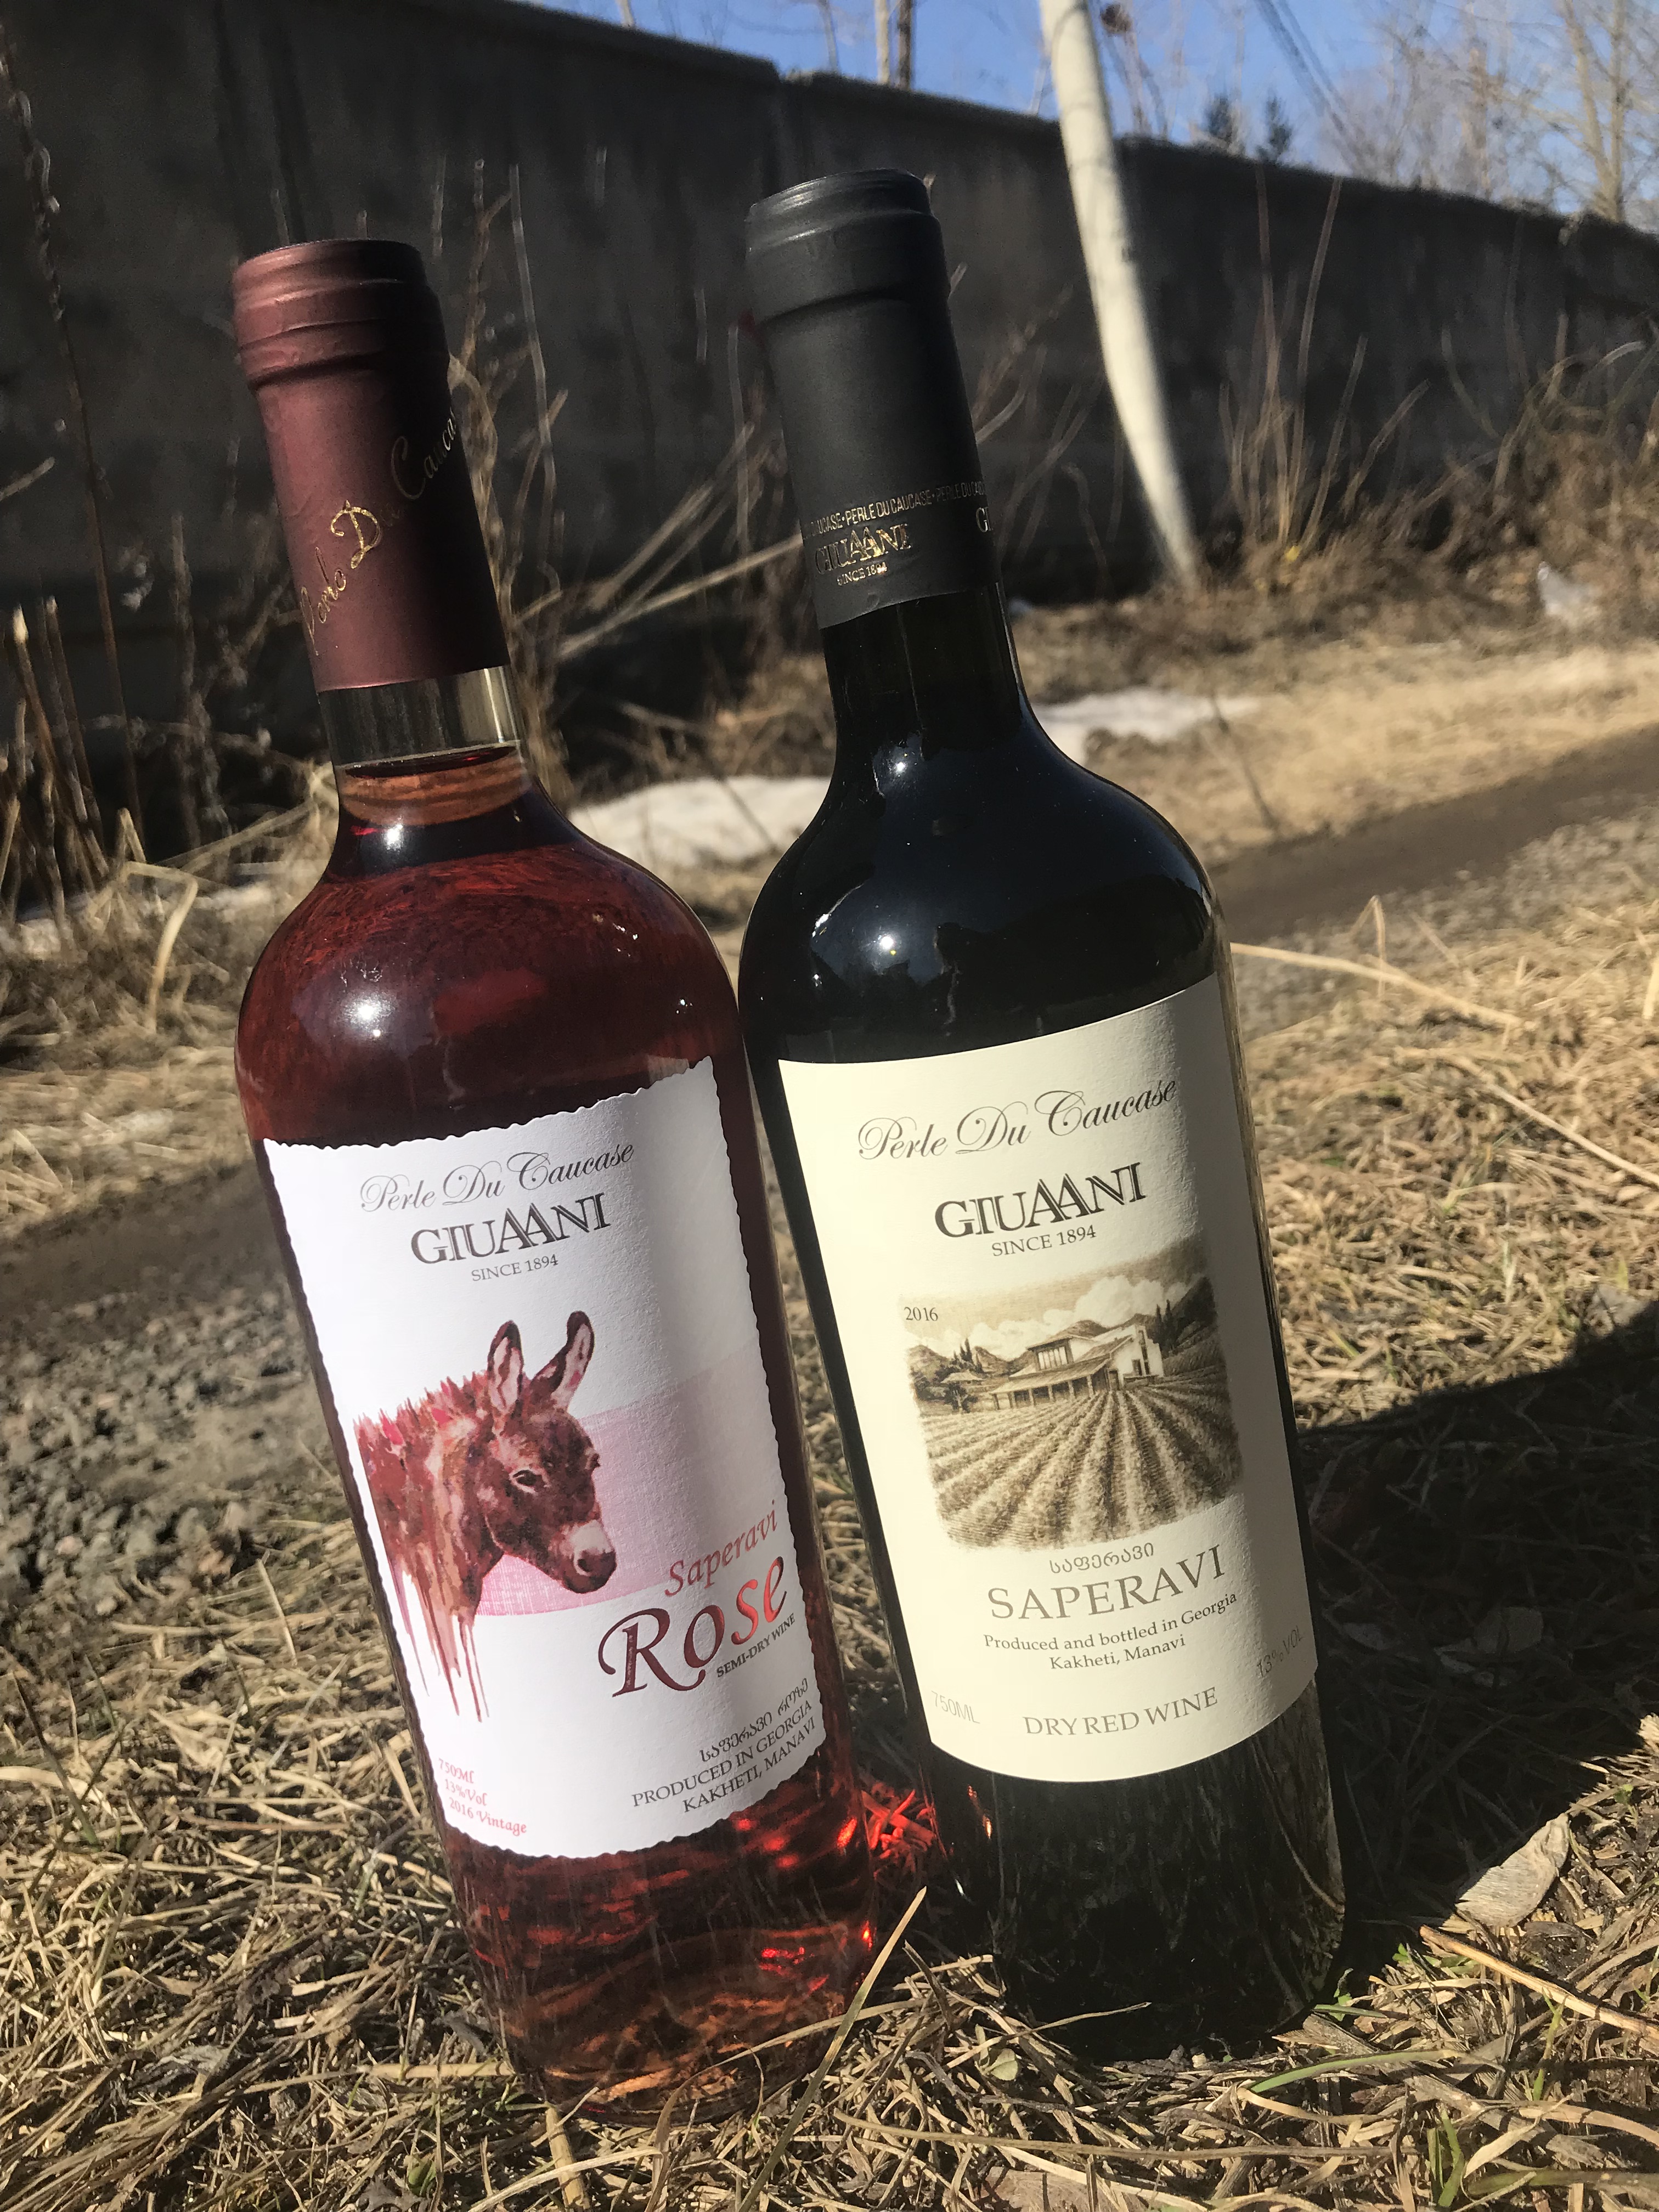 Какое грузинское вино вам понравилось?